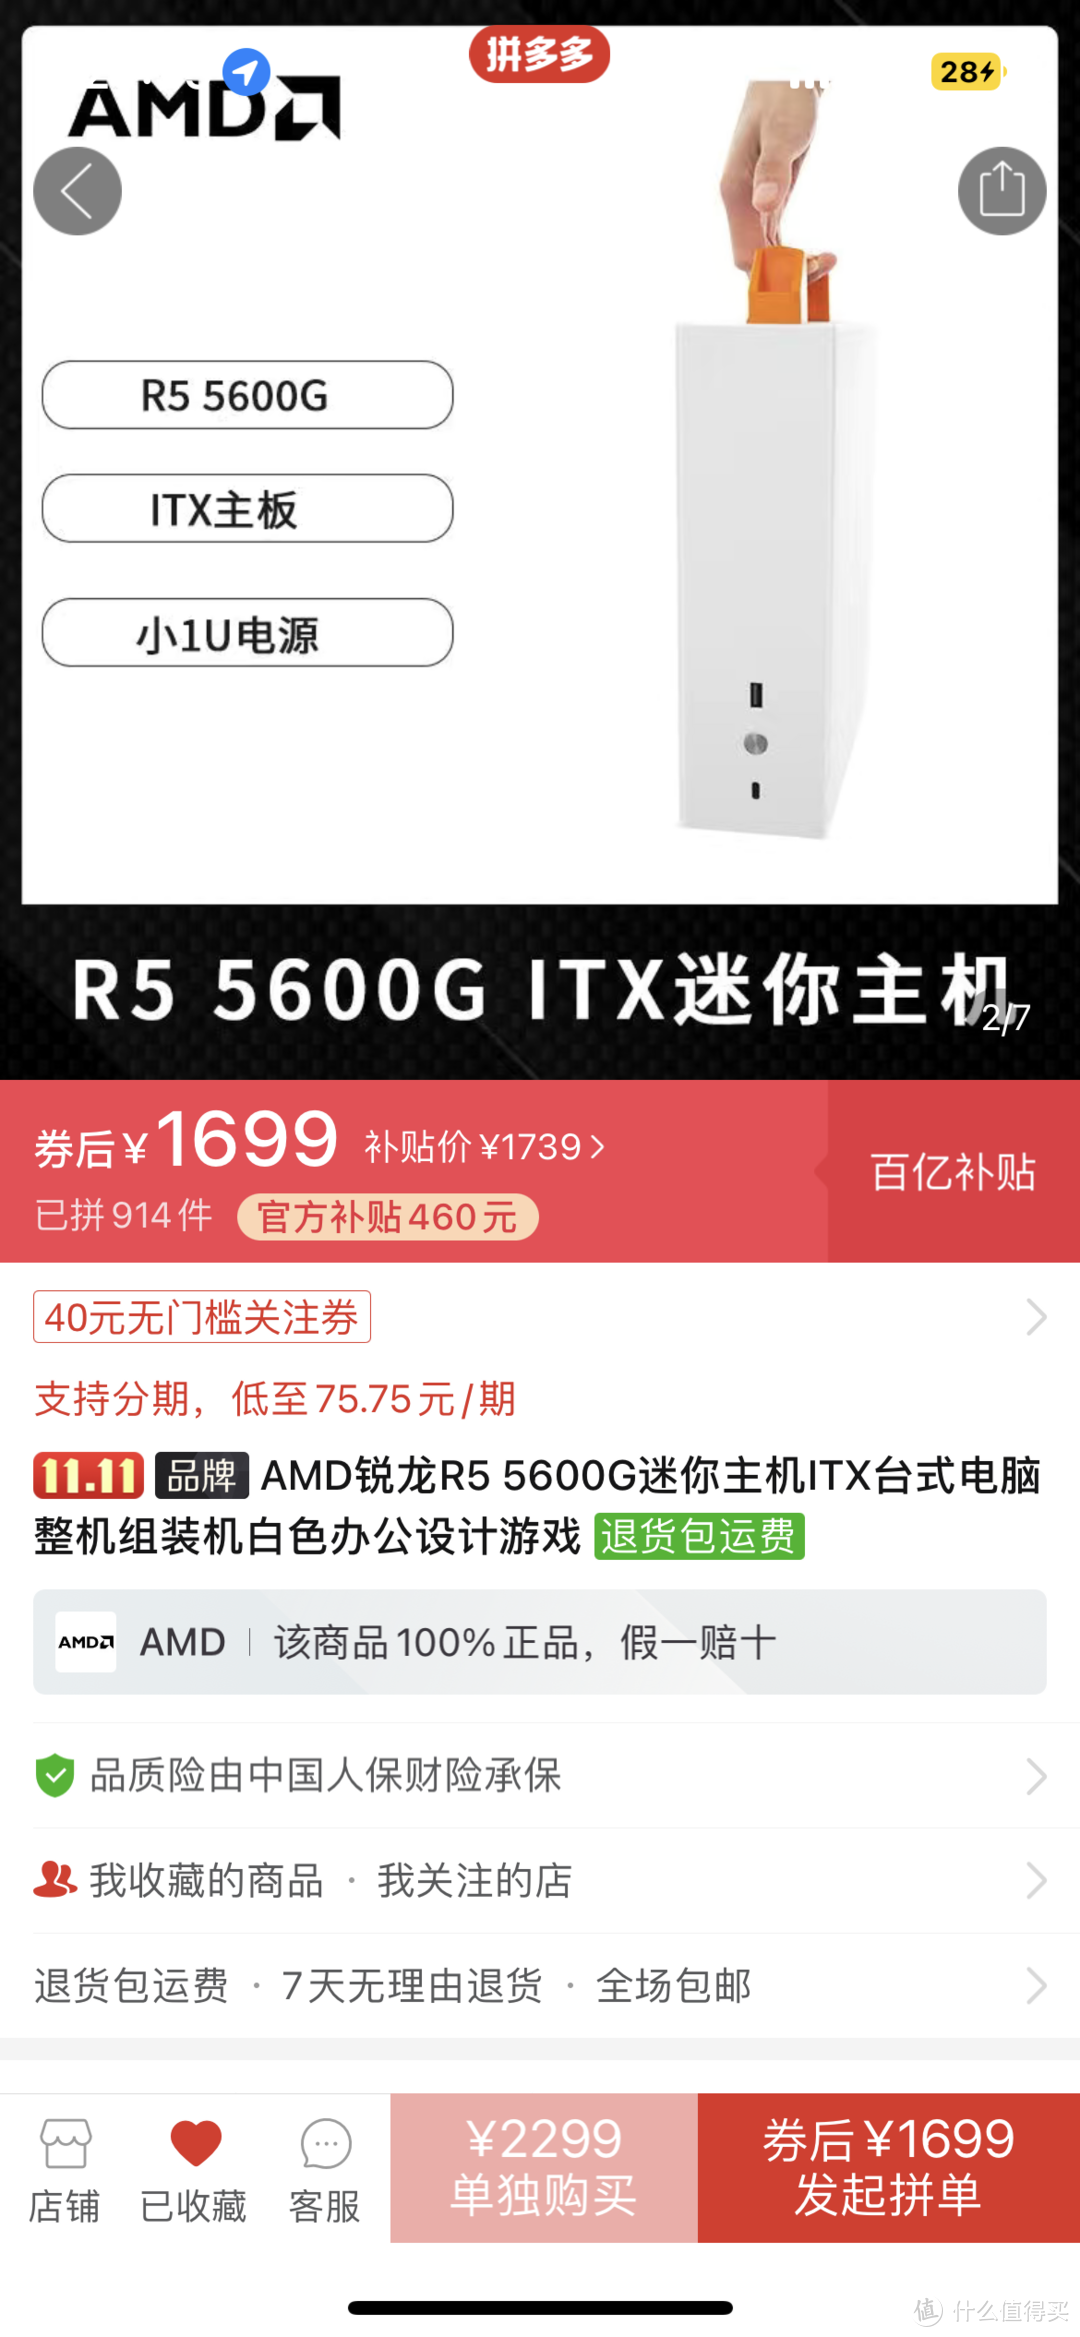 AMD R5600g itx主机购买分享 小白第一次装机第一次发文章 还请各位大佬海涵 东西都在路上了 周末装机